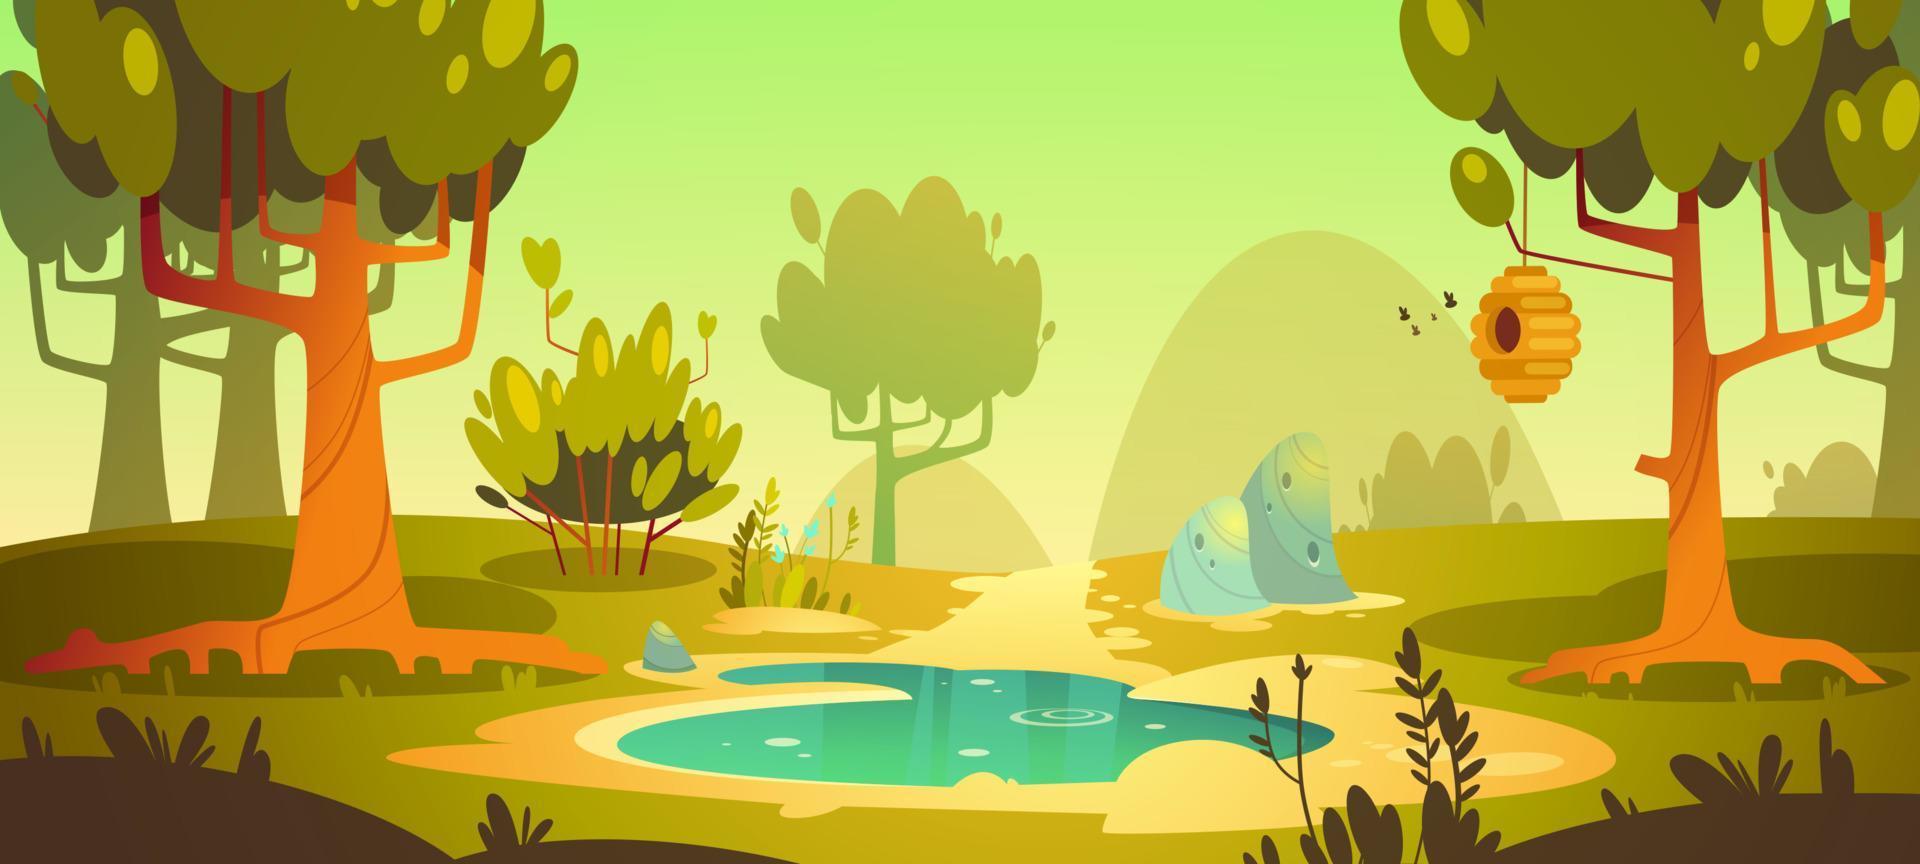 fondo de bosque de dibujos animados con estanque, pantano, sendero vector